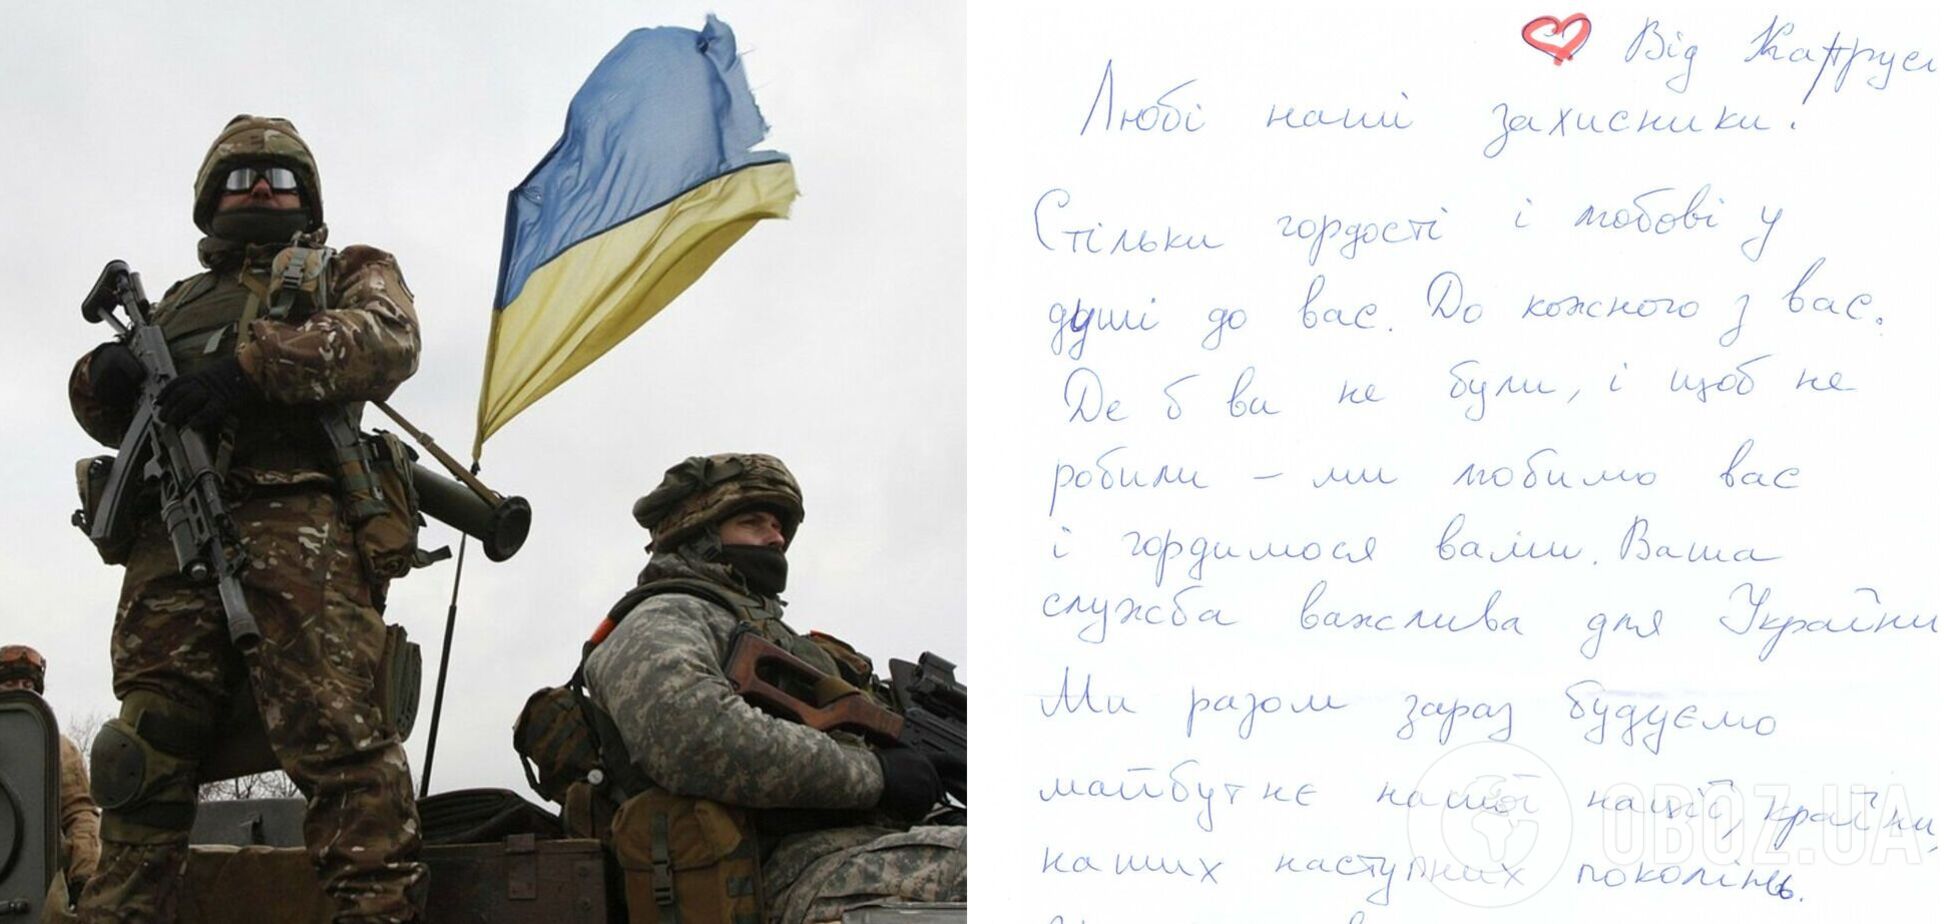 'Ми любимо вас, Герої!' Українські воїни поділилися зворушливим листом від дівчинки Каті. Фото